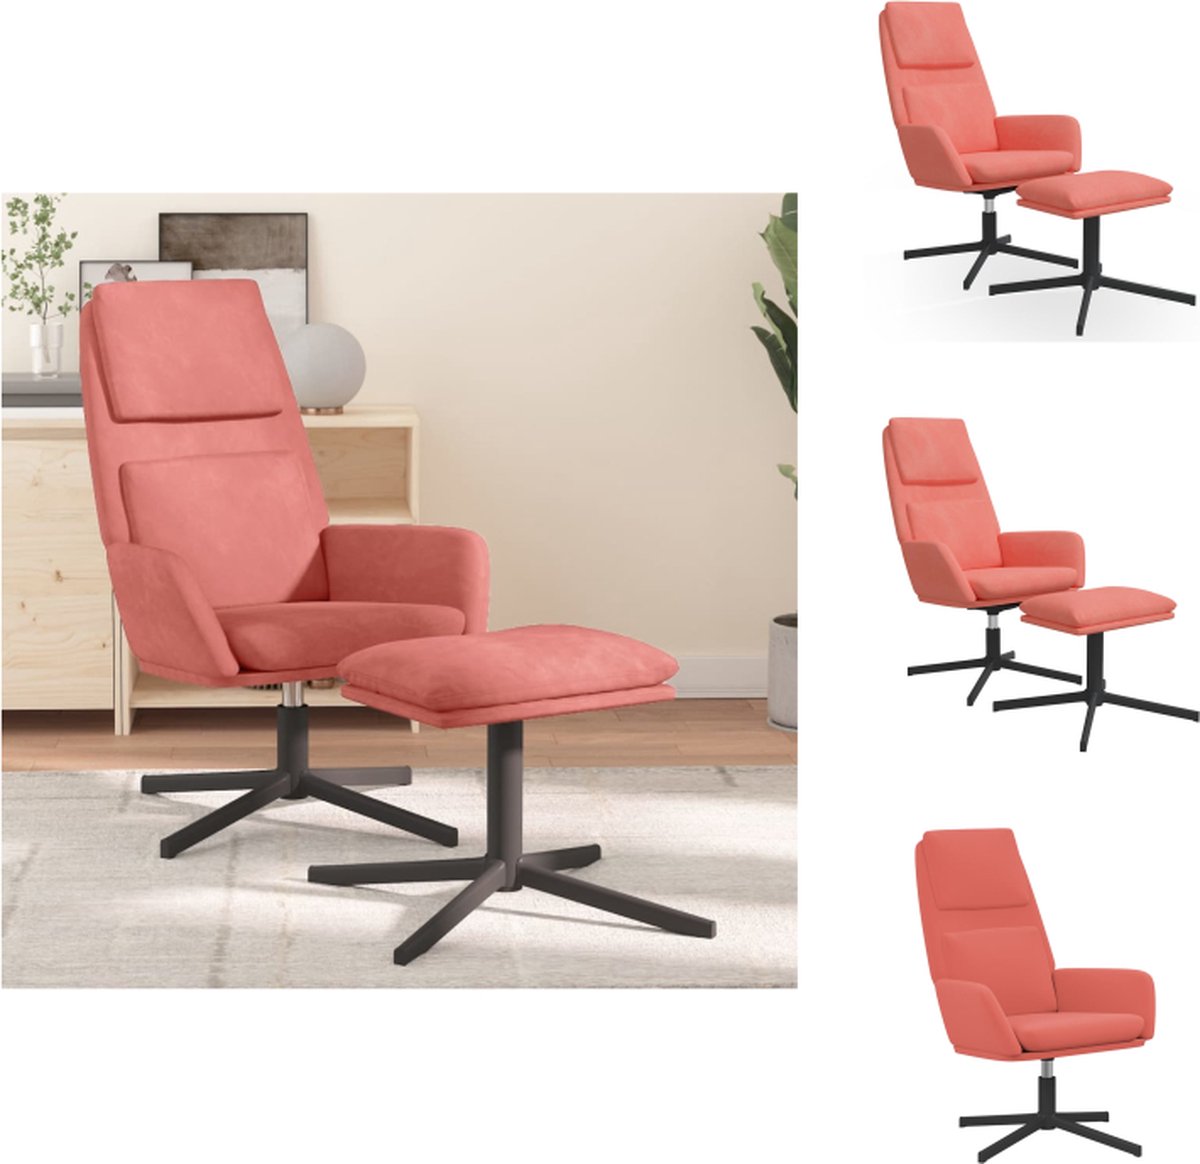 VidaXL Relaxstoel Velvet Roze 70x77x98cm 360 graden draaibaar Inclusief voetenbank Fauteuil